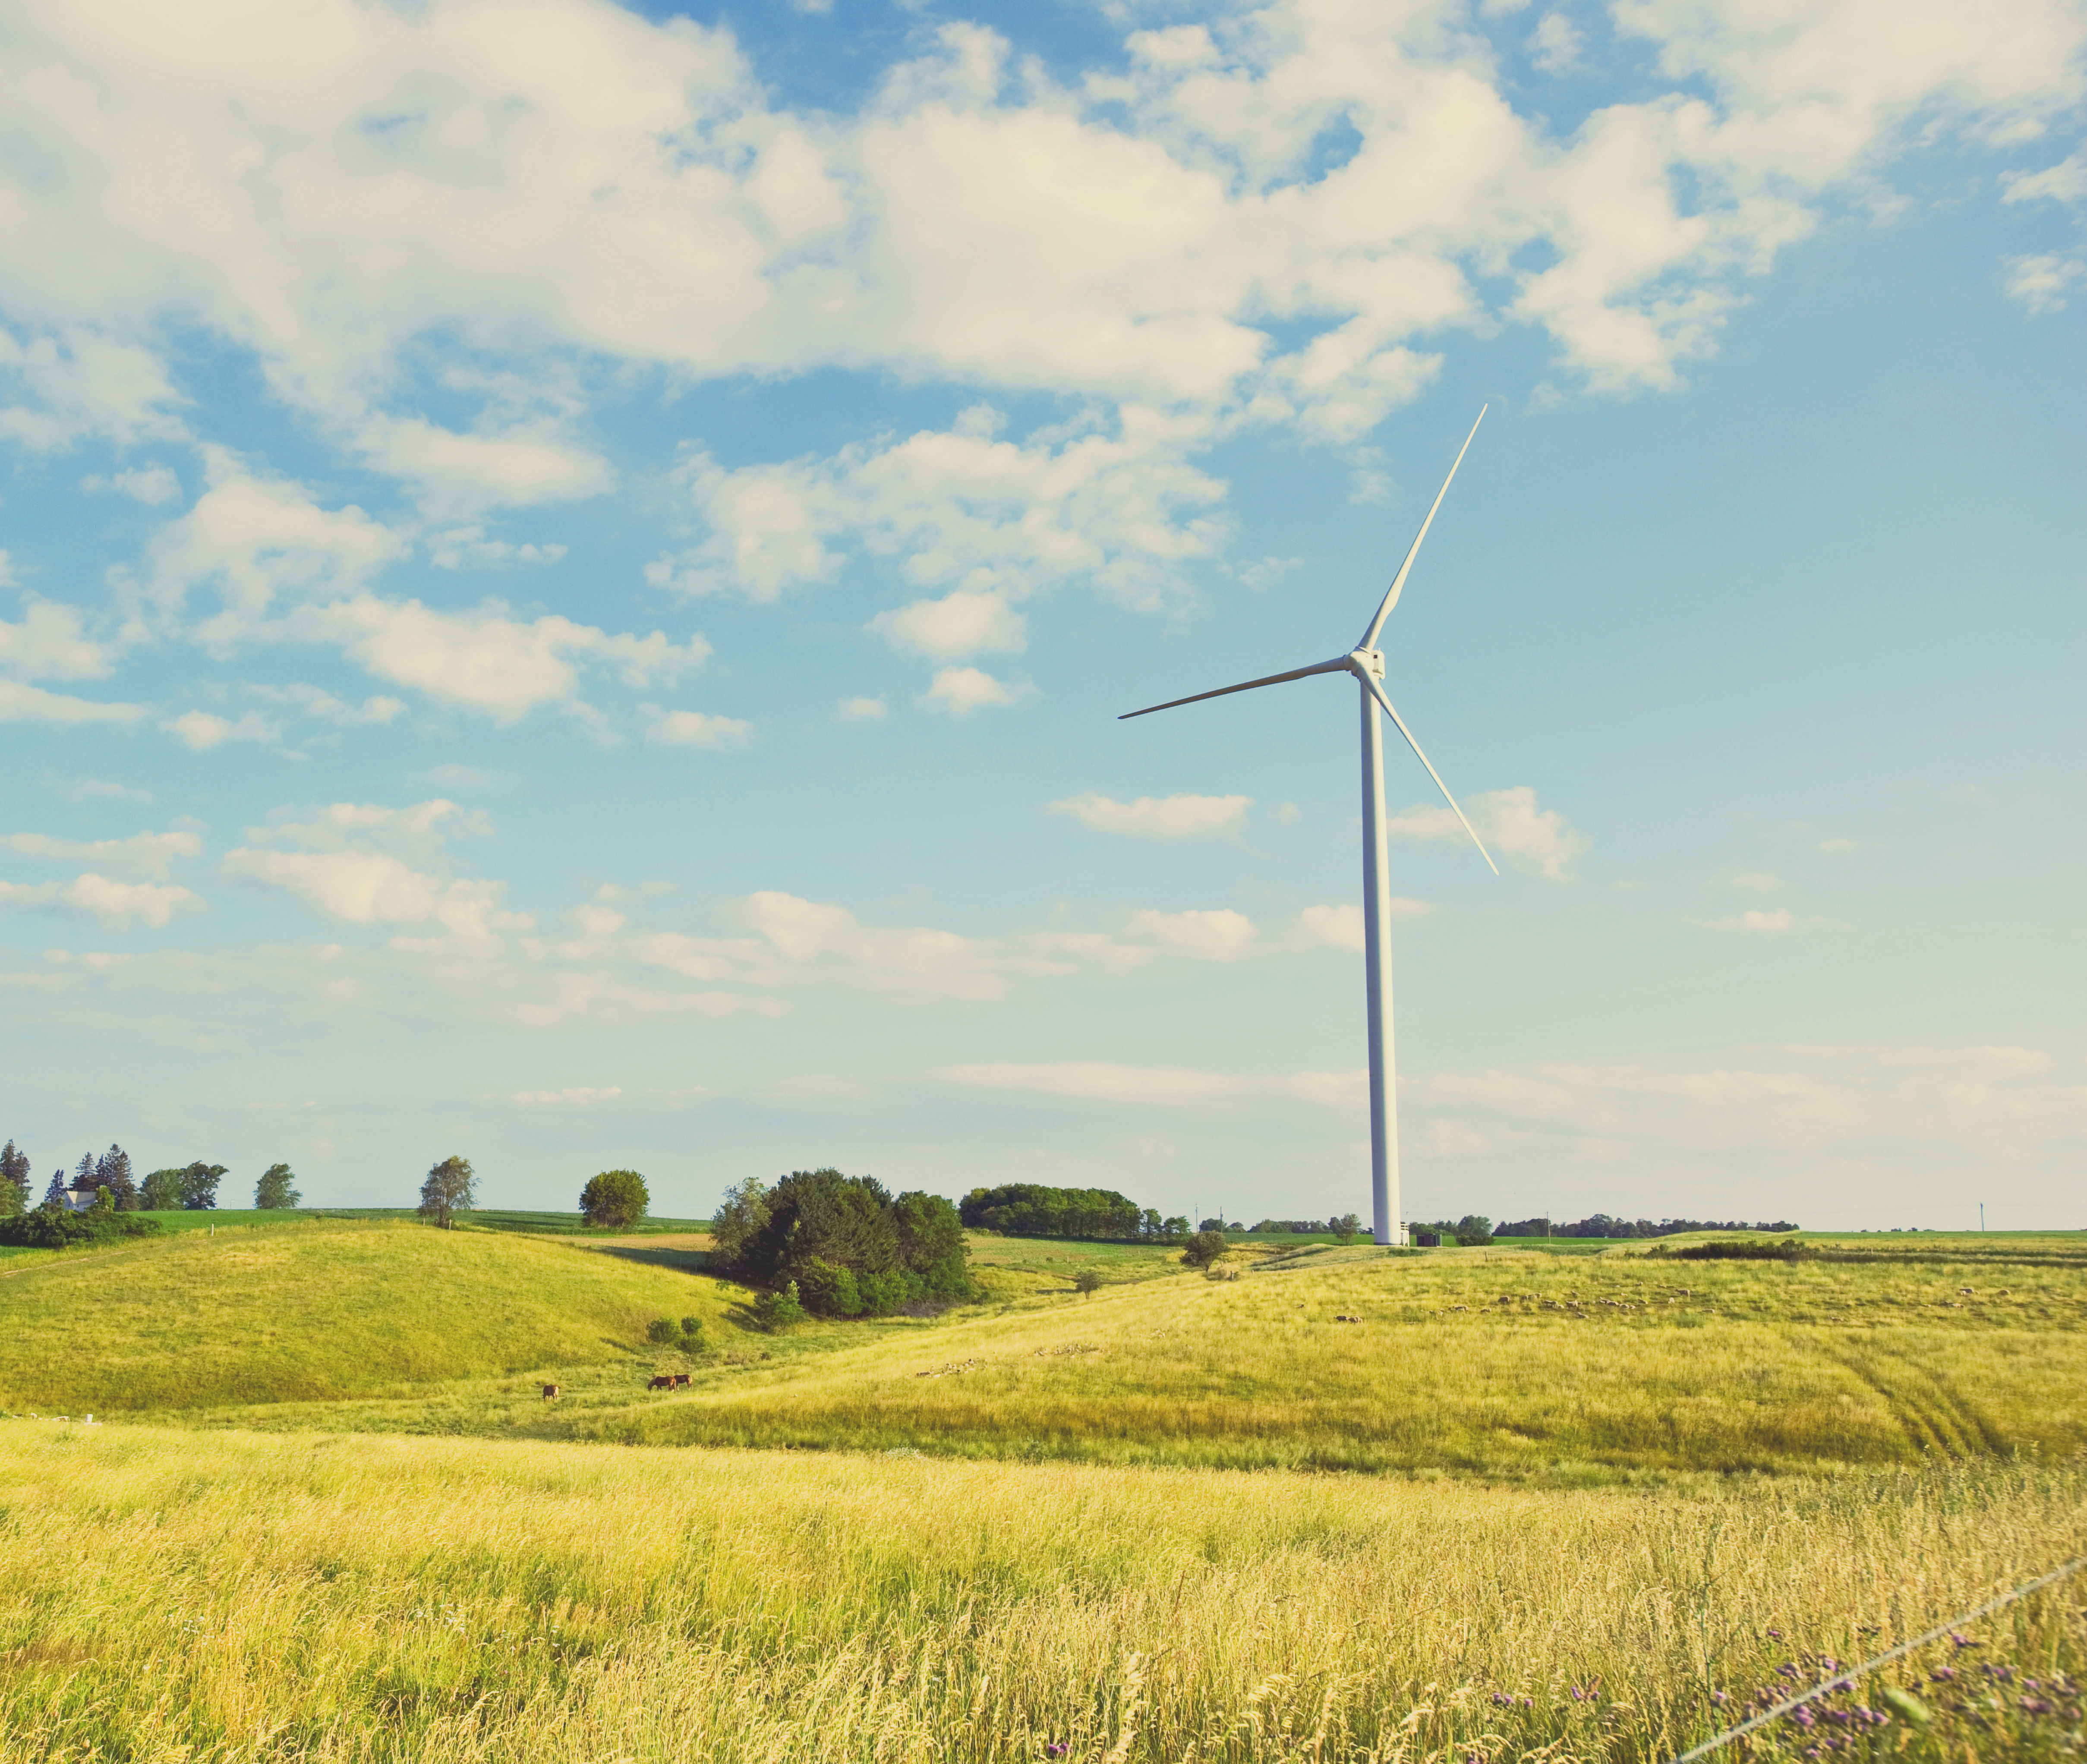 Wind turbine in farm field against blue sky.